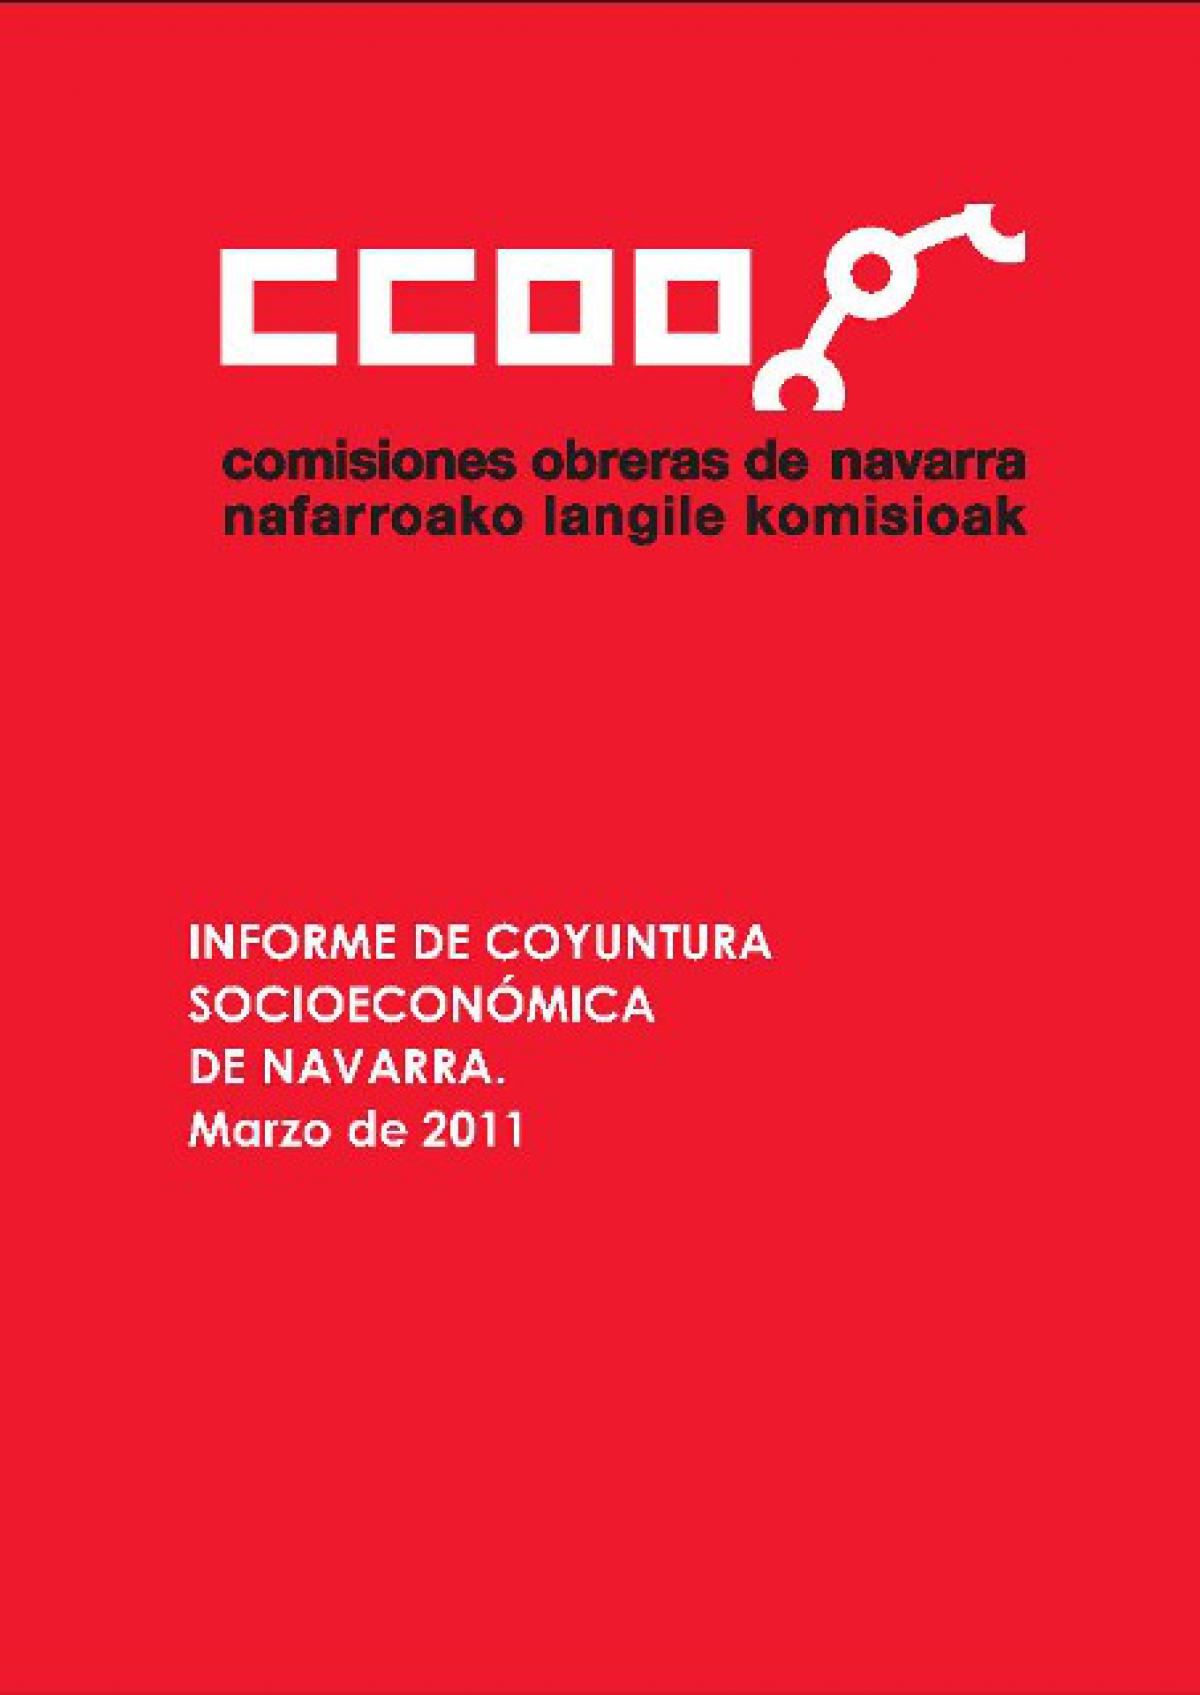 informe coyuntura socioeconómica de navarra. marzo 2011